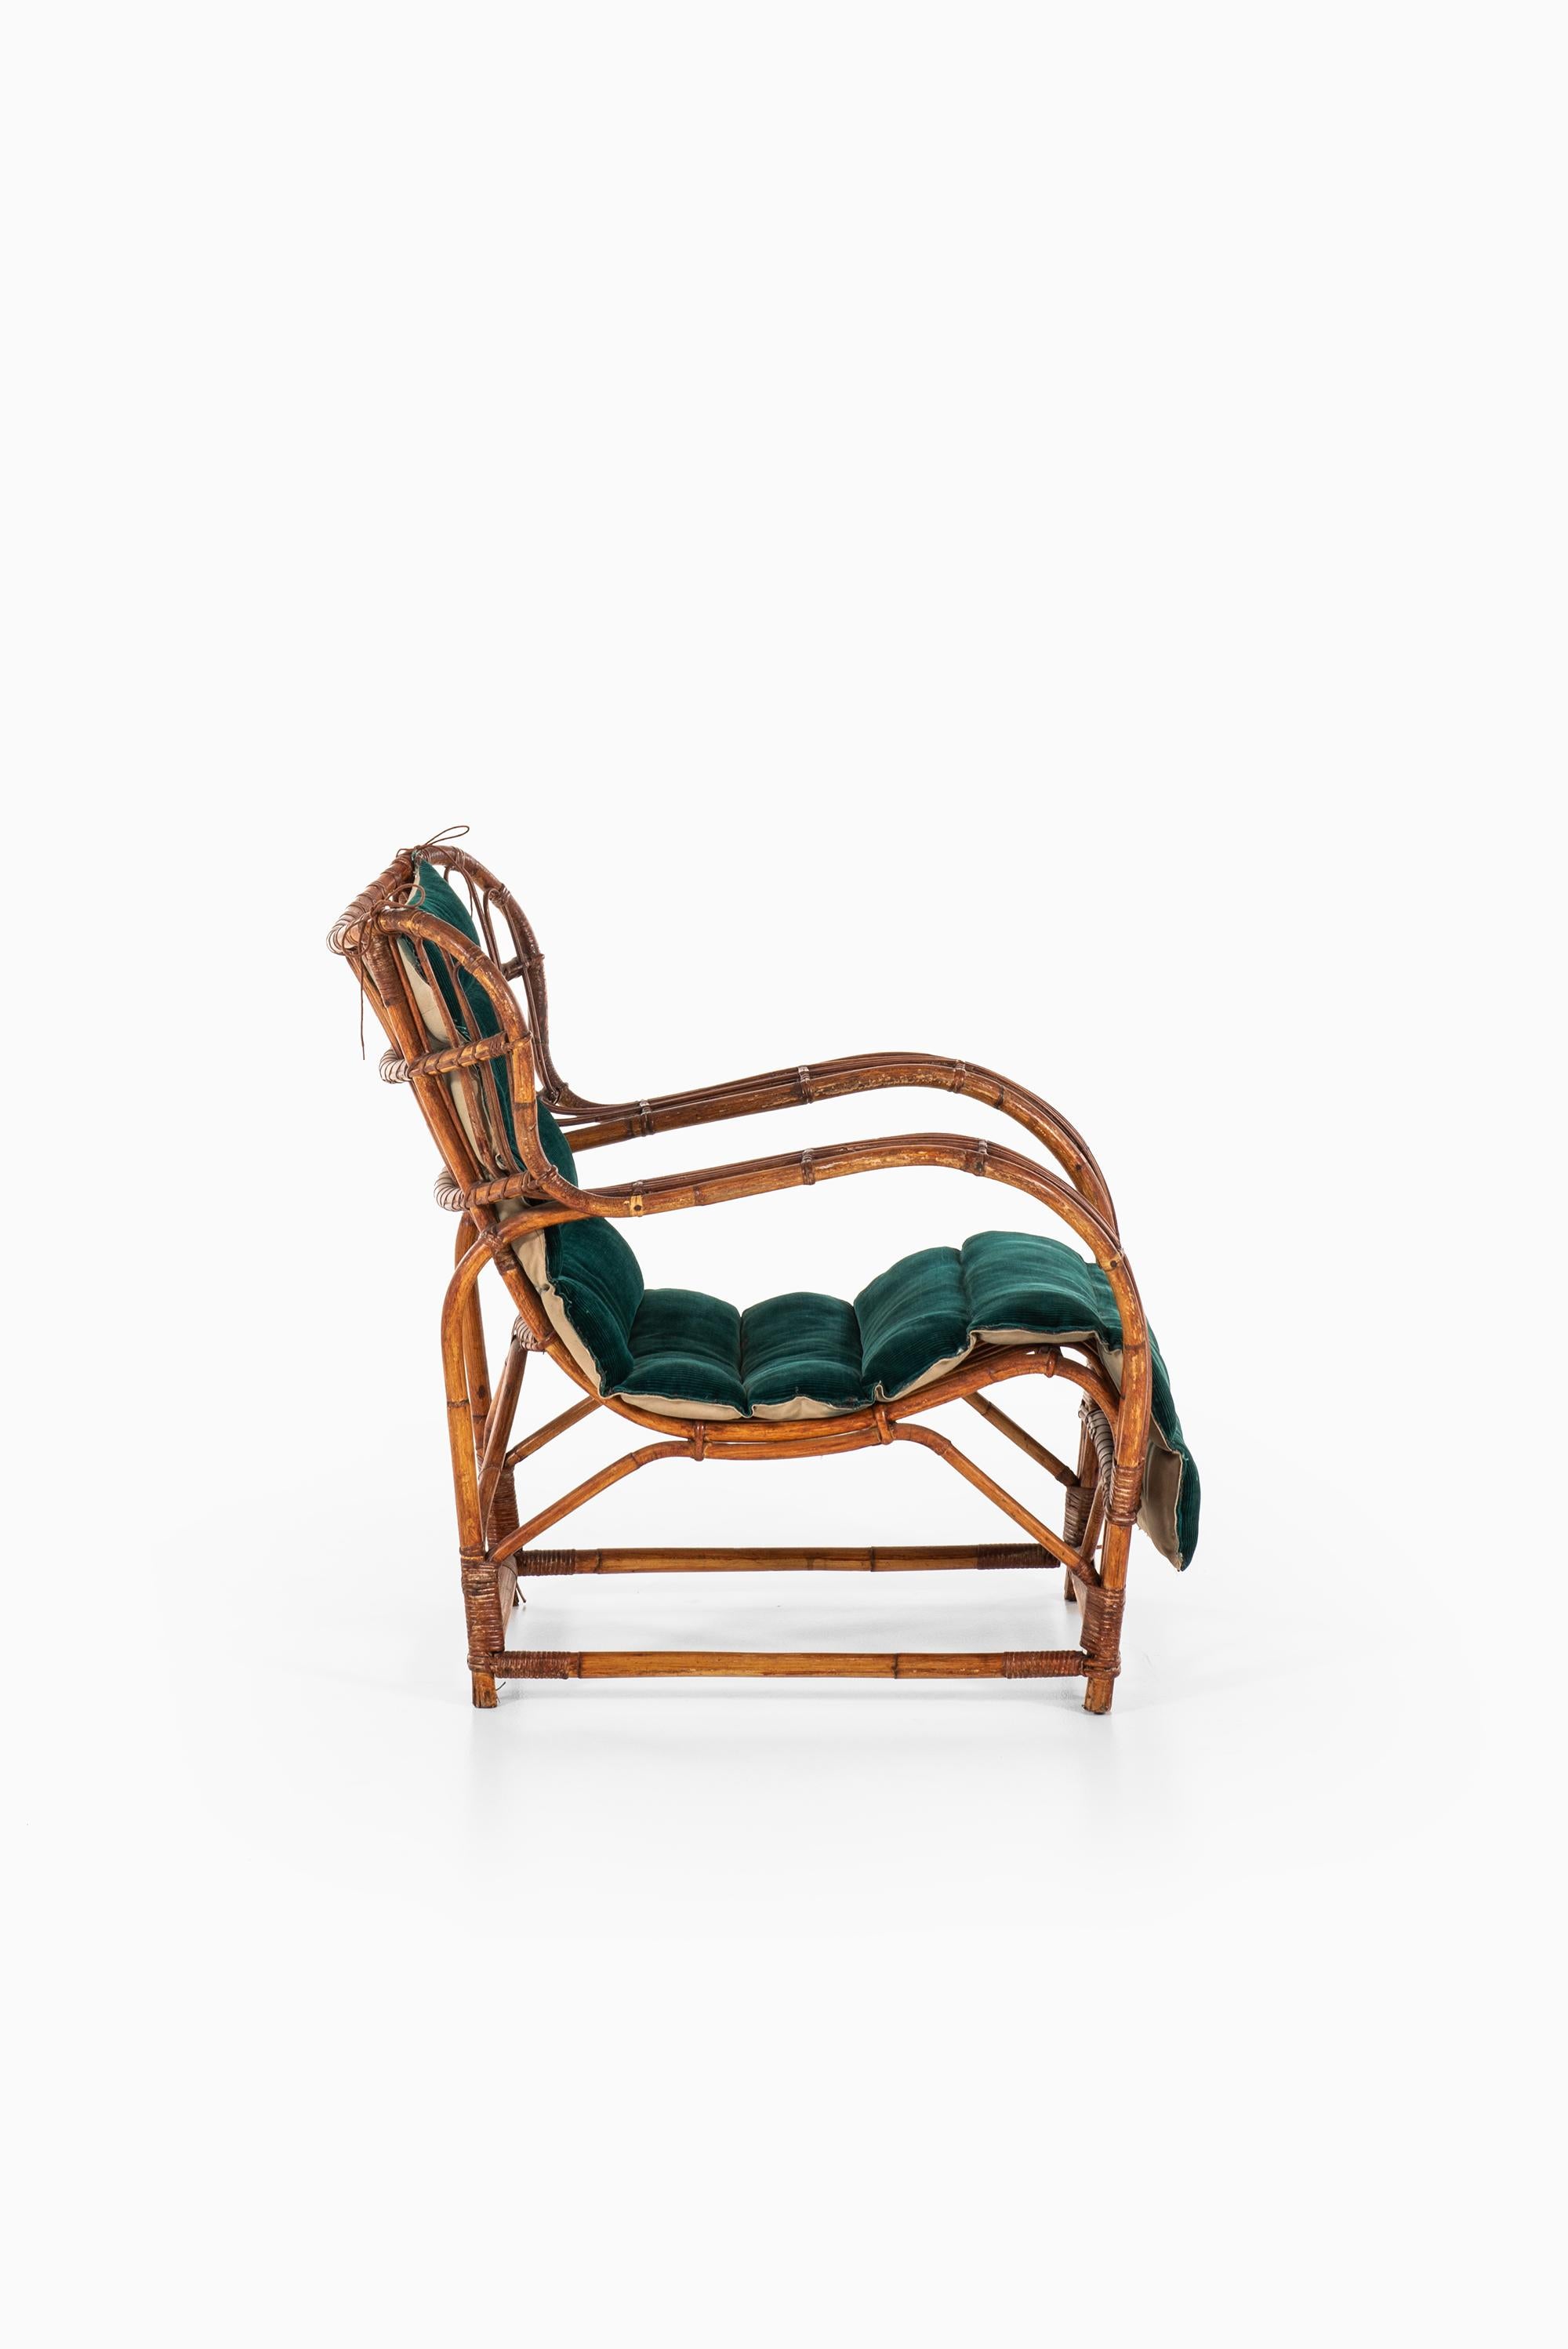 Viggo Boesen Easy Chair Produced by E.V.A. Nissen & Co in Denmark 3